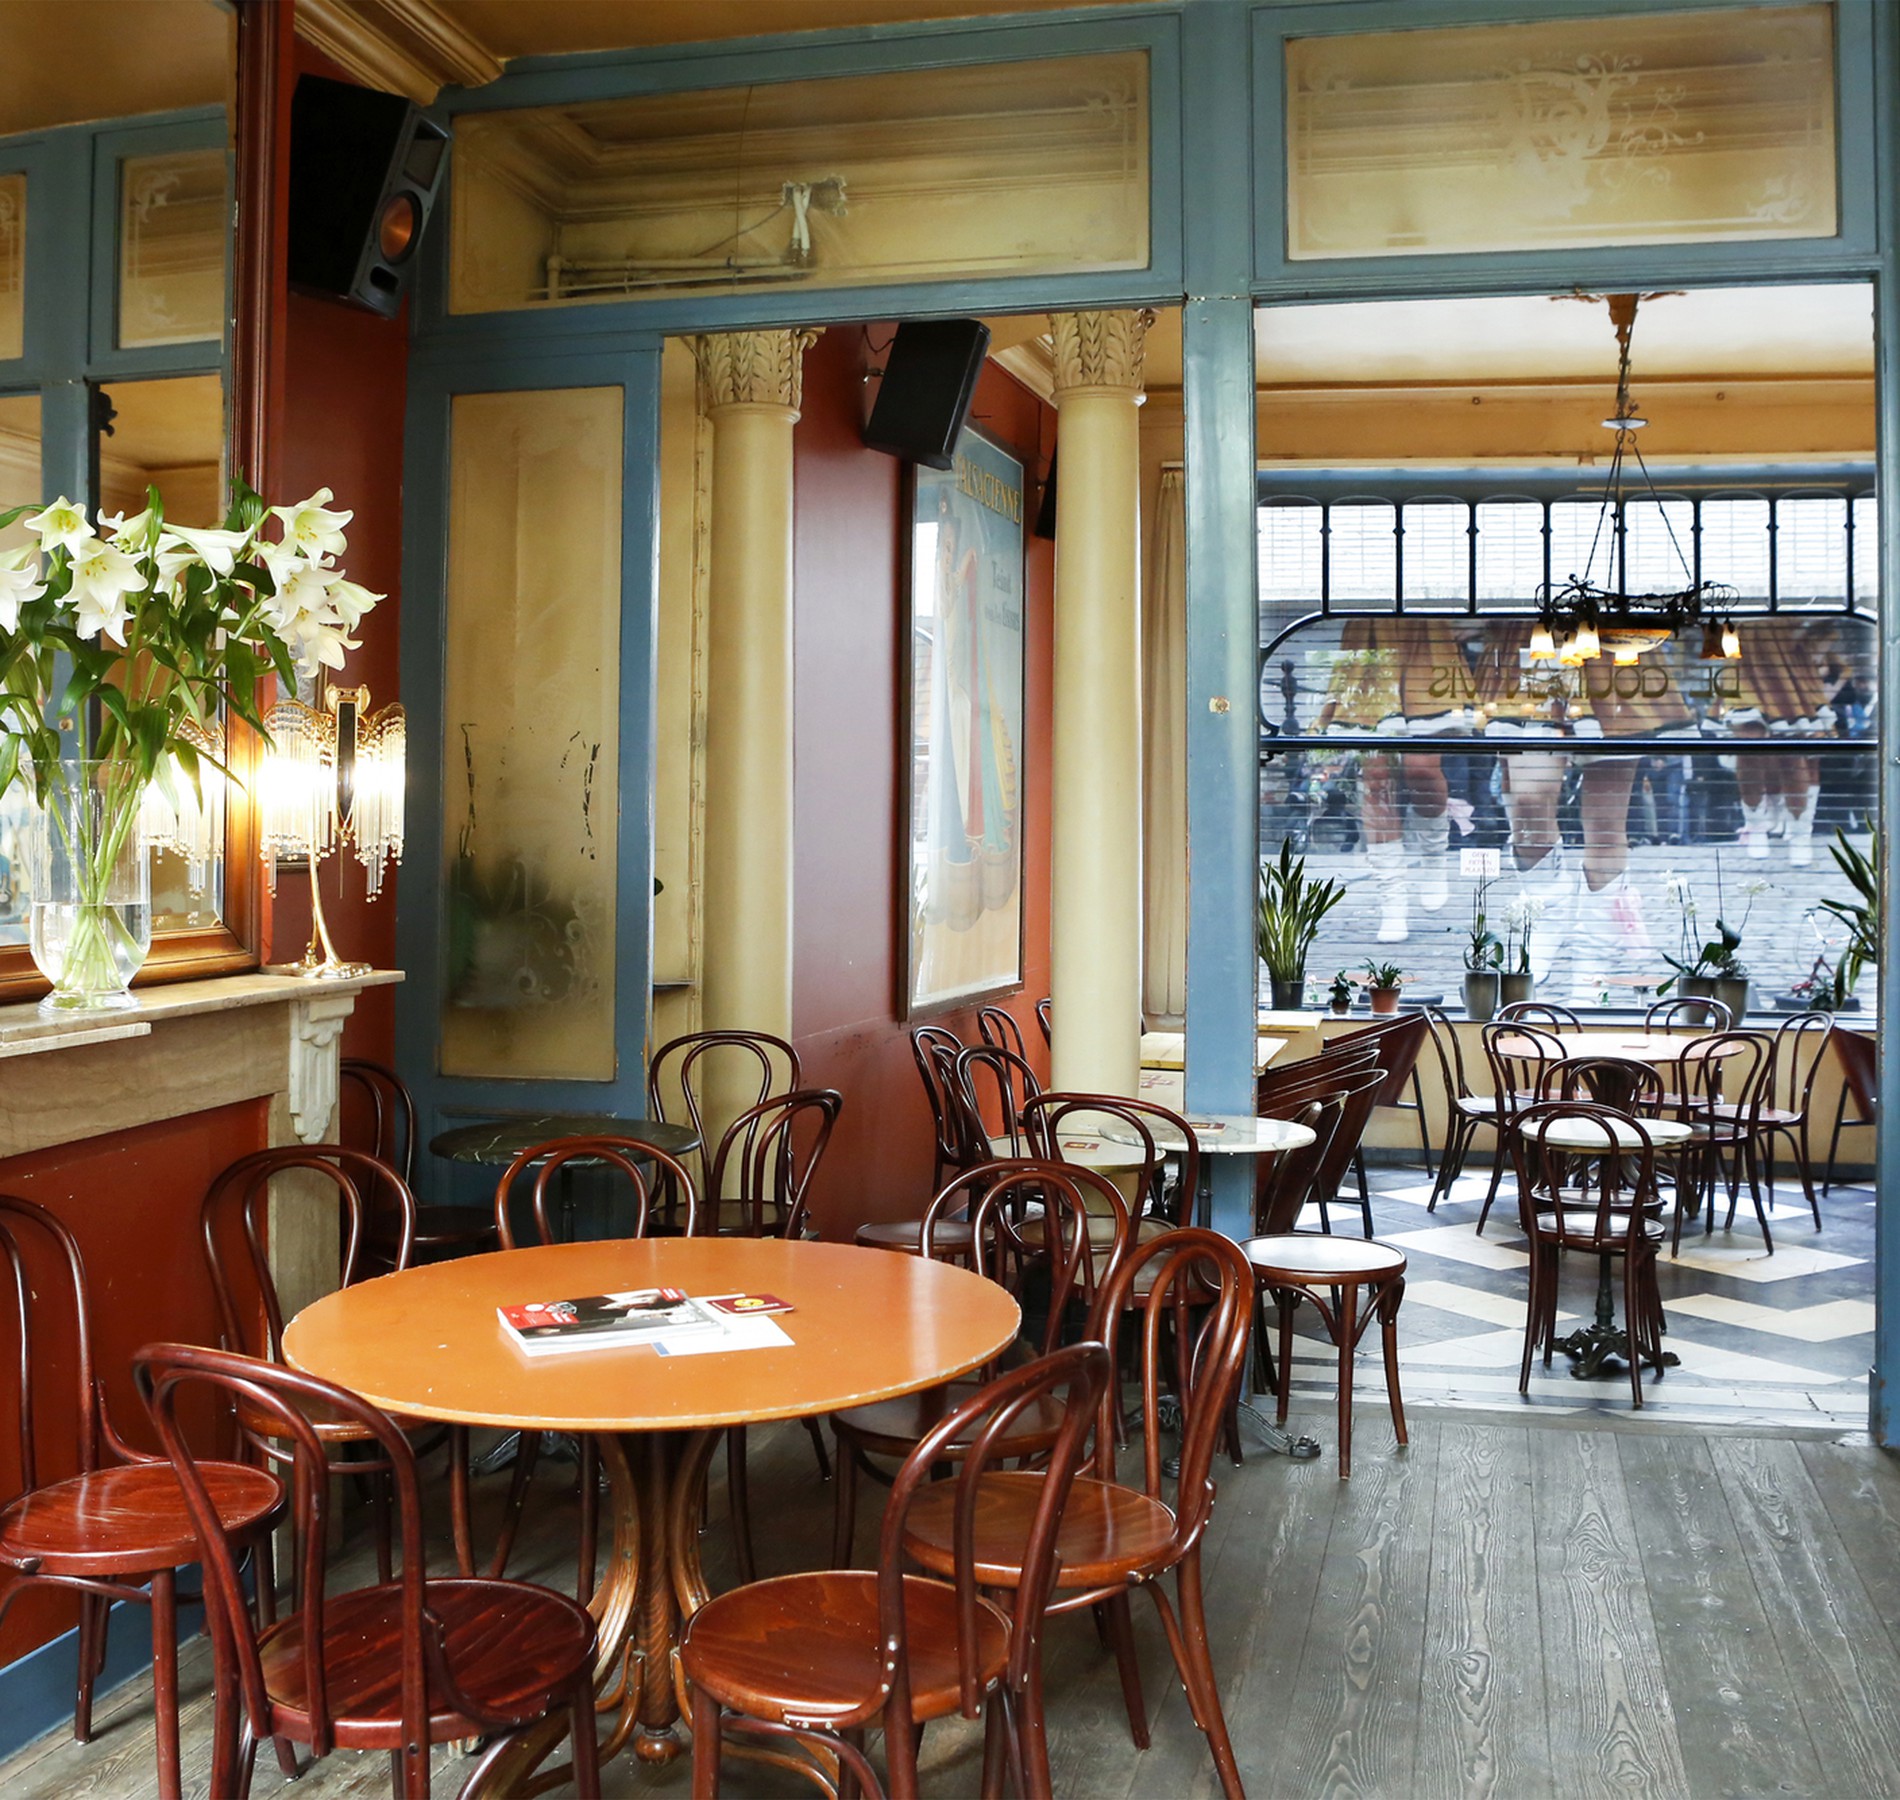 partner Meenemen schoner De Gouden Vis - art-nouveau café in het centrum van Mechelen